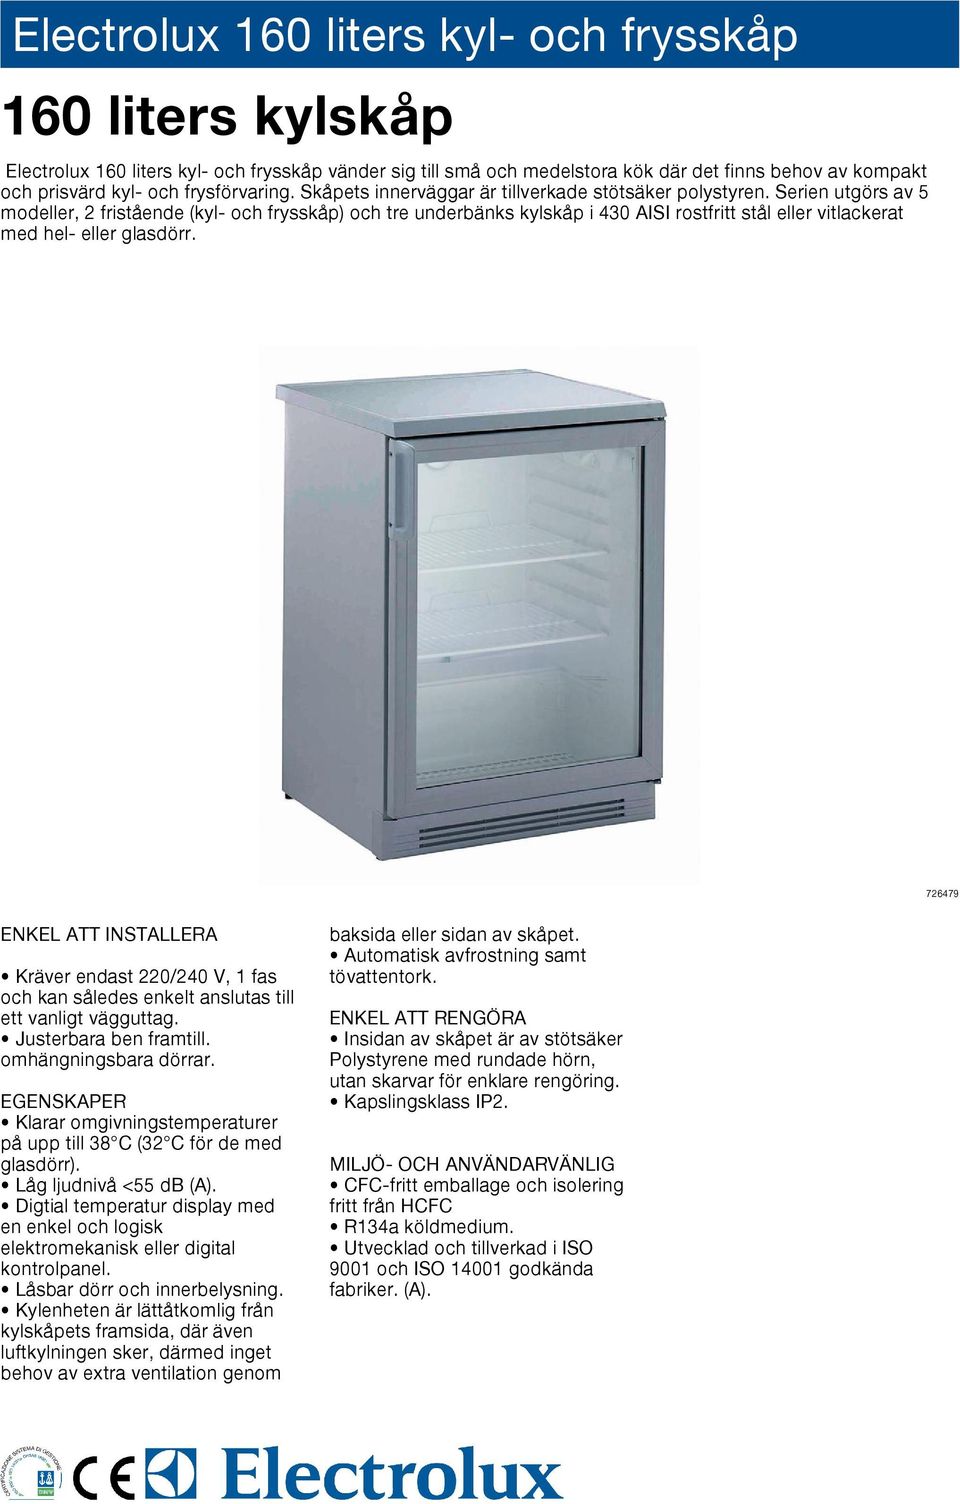 Serien utgörs av 5 modeller, 2 fristående (kyl- och frysskåp) och tre underbänks kylskåp i 430 AISI rostfritt eller vitlackerat med hel- eller glasdörr.